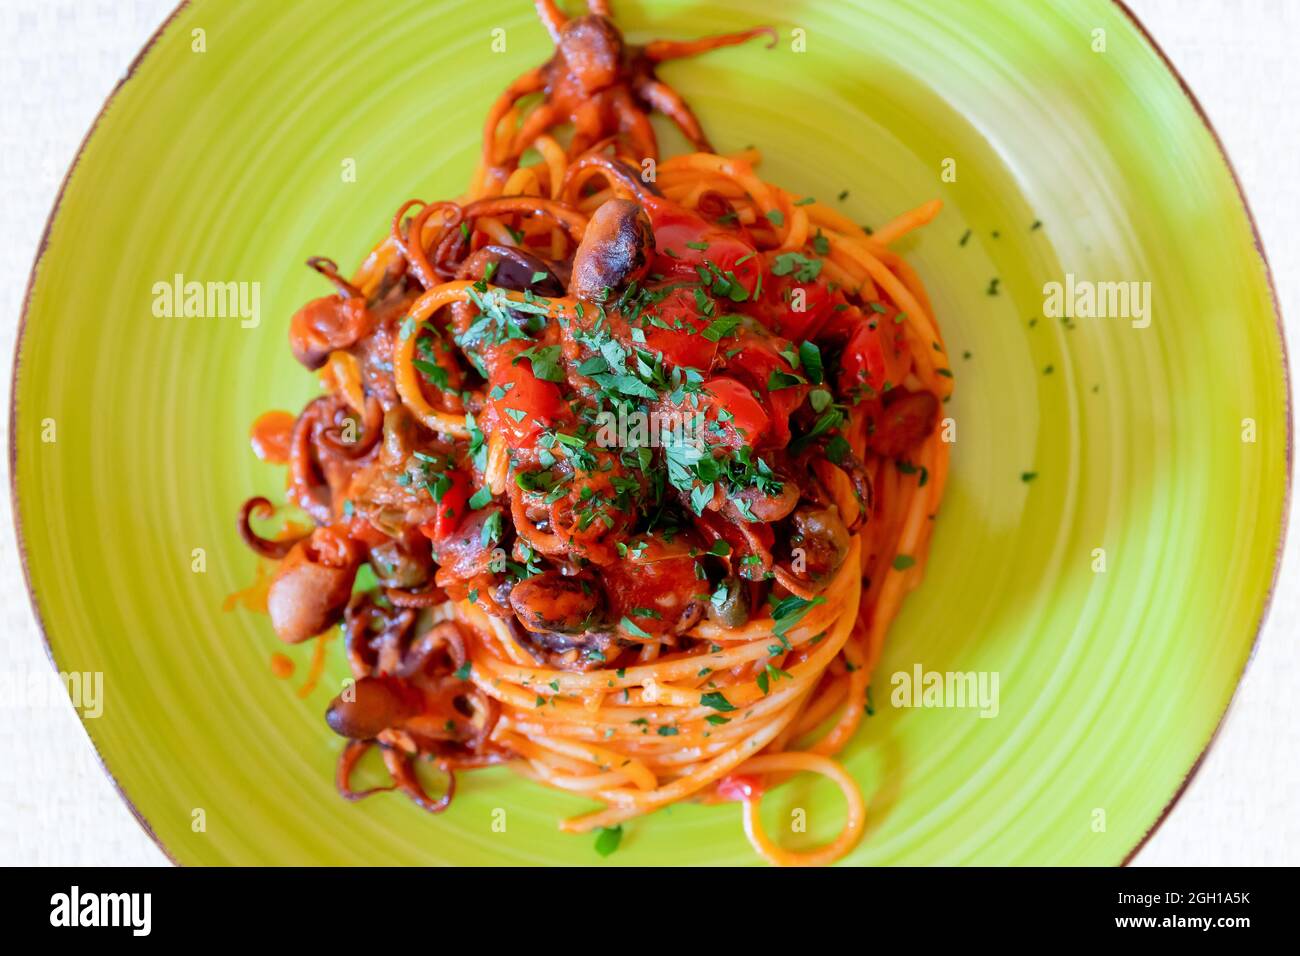 Spaghetti à l'octopus, sauce tomate, olives et câpres. Recette typique de la cuisine napolitaine, en Italie. Prêt à manger. Banque D'Images